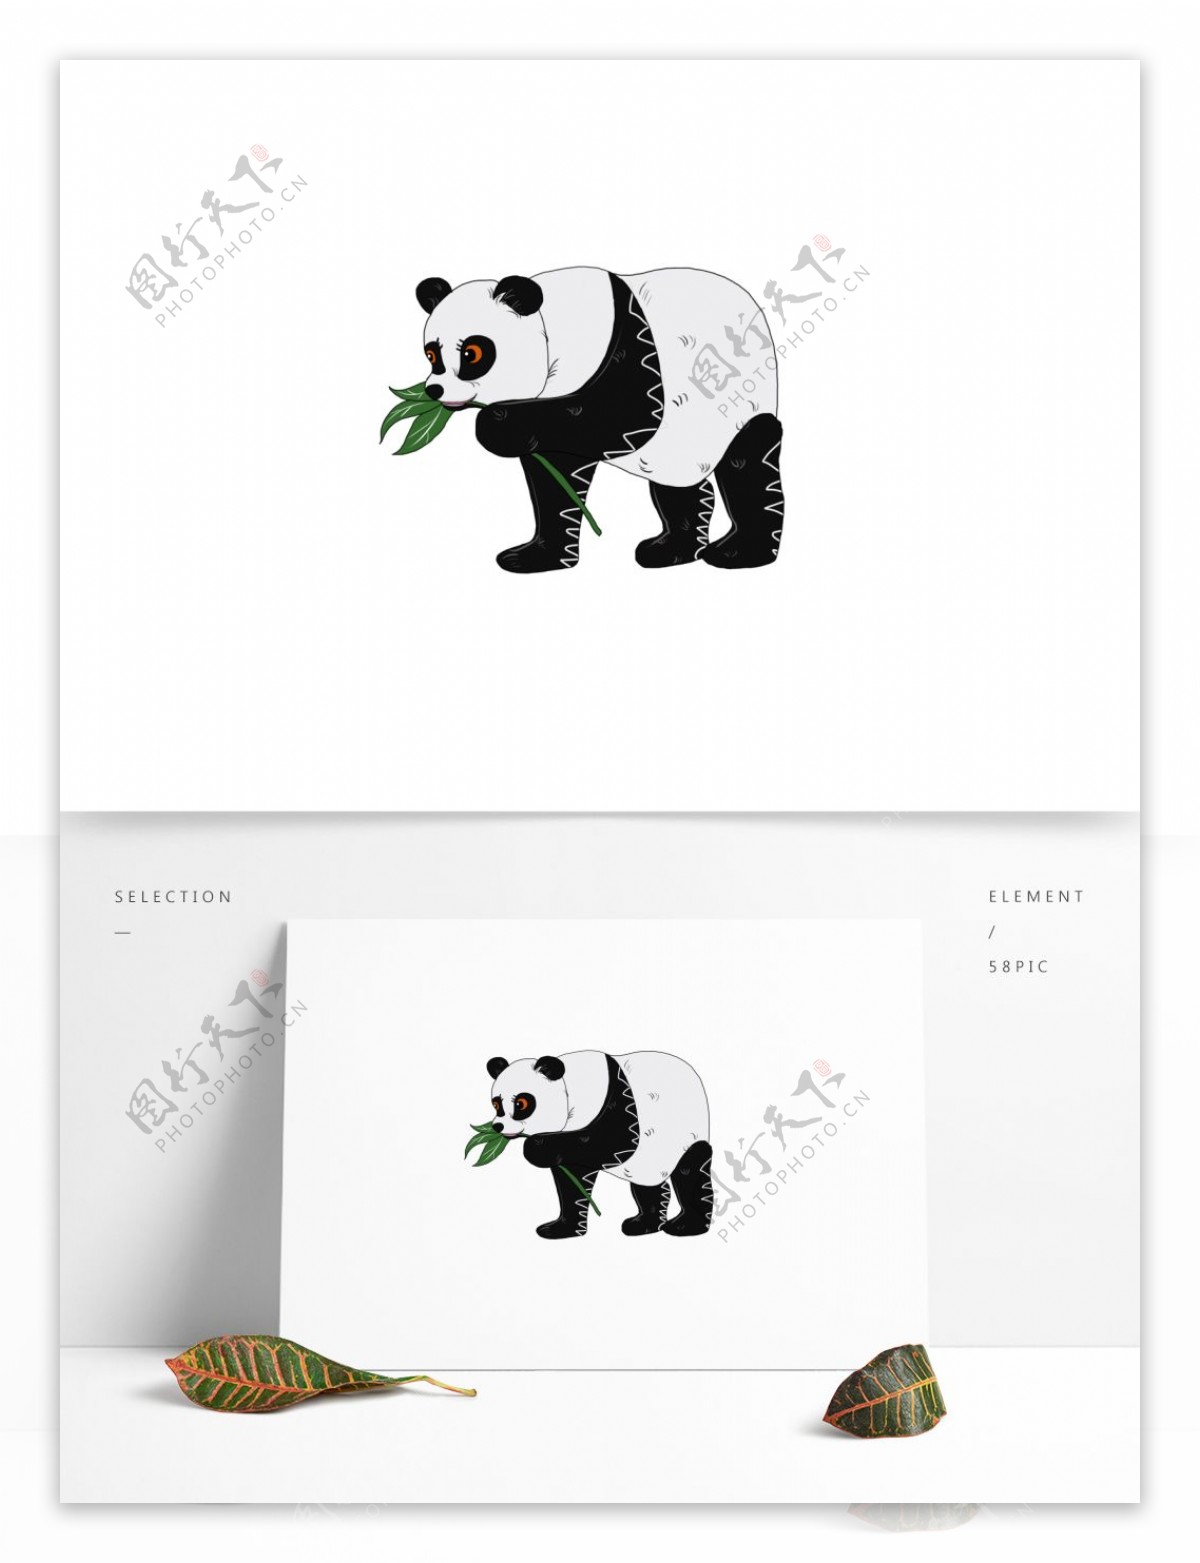 手绘吃竹子的熊猫动物设计